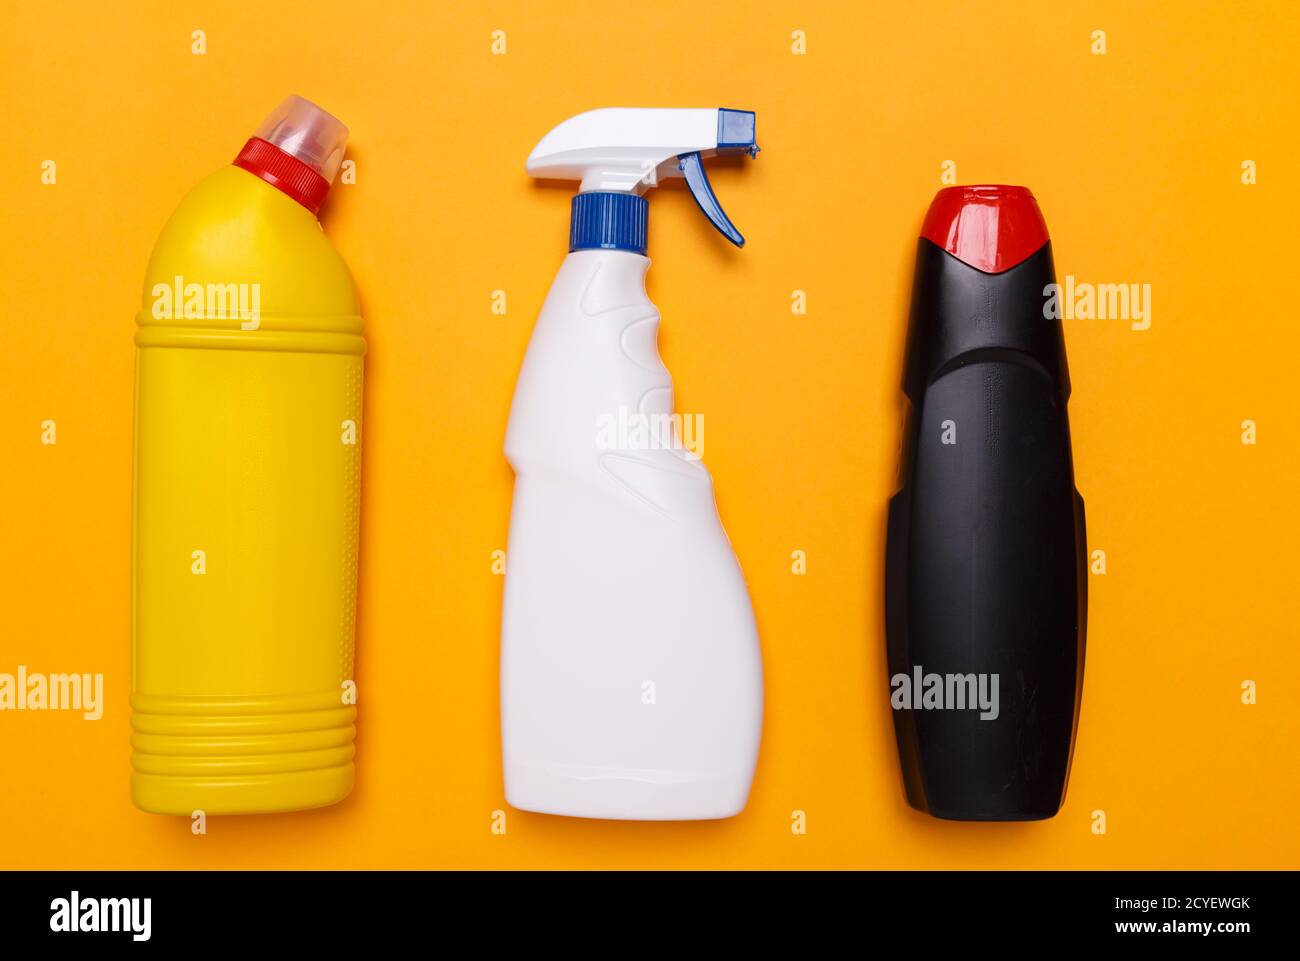 Eine gelbe Flasche mit einem Toilettenreiniger sowie eine weiße Flasche zum Reinigen von Glas und eine schwarze Flasche zum Entfernen von Rost auf gelbem Hintergrund. Stockfoto